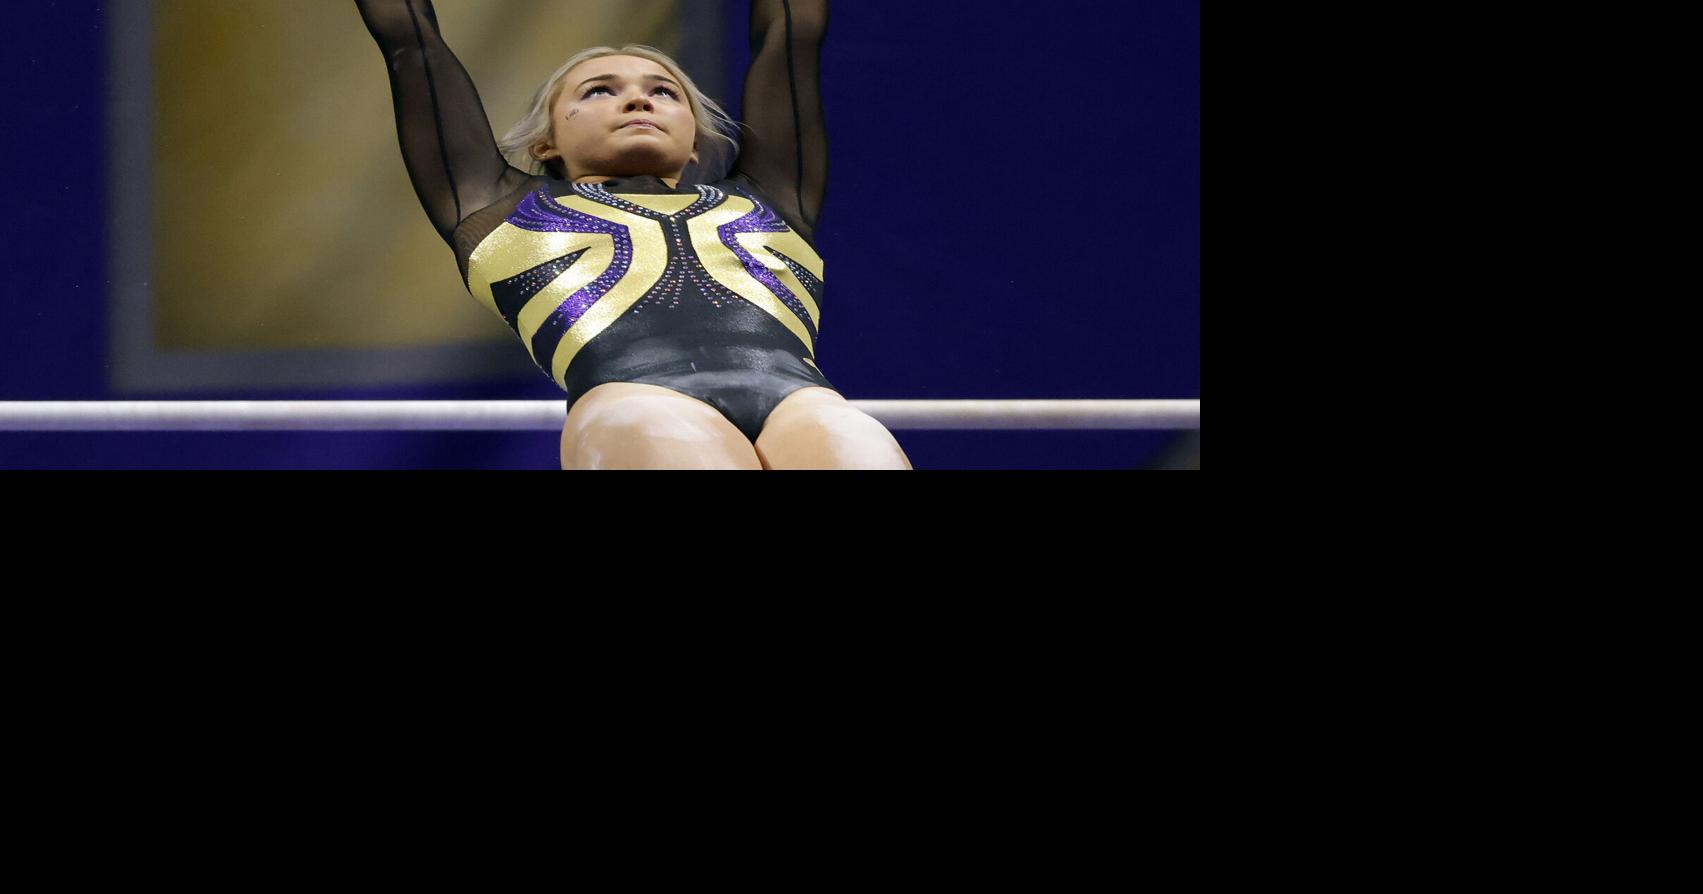 Gymnast Dunne’s AI spot raises questions about NIL ethics